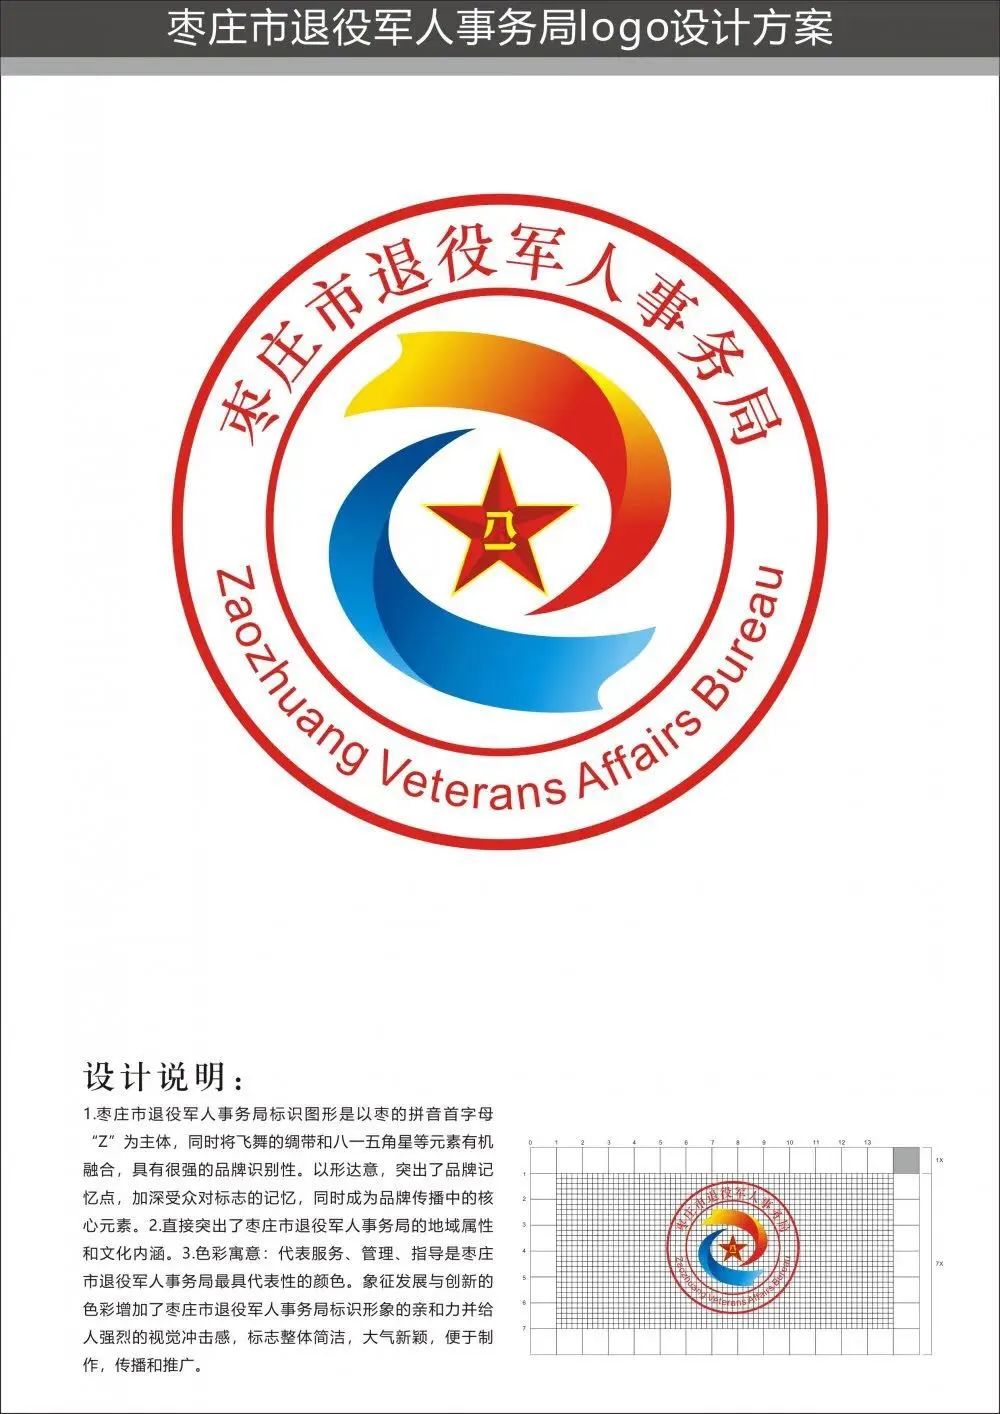 枣庄市退役军人事务局logo征集获奖作品公布